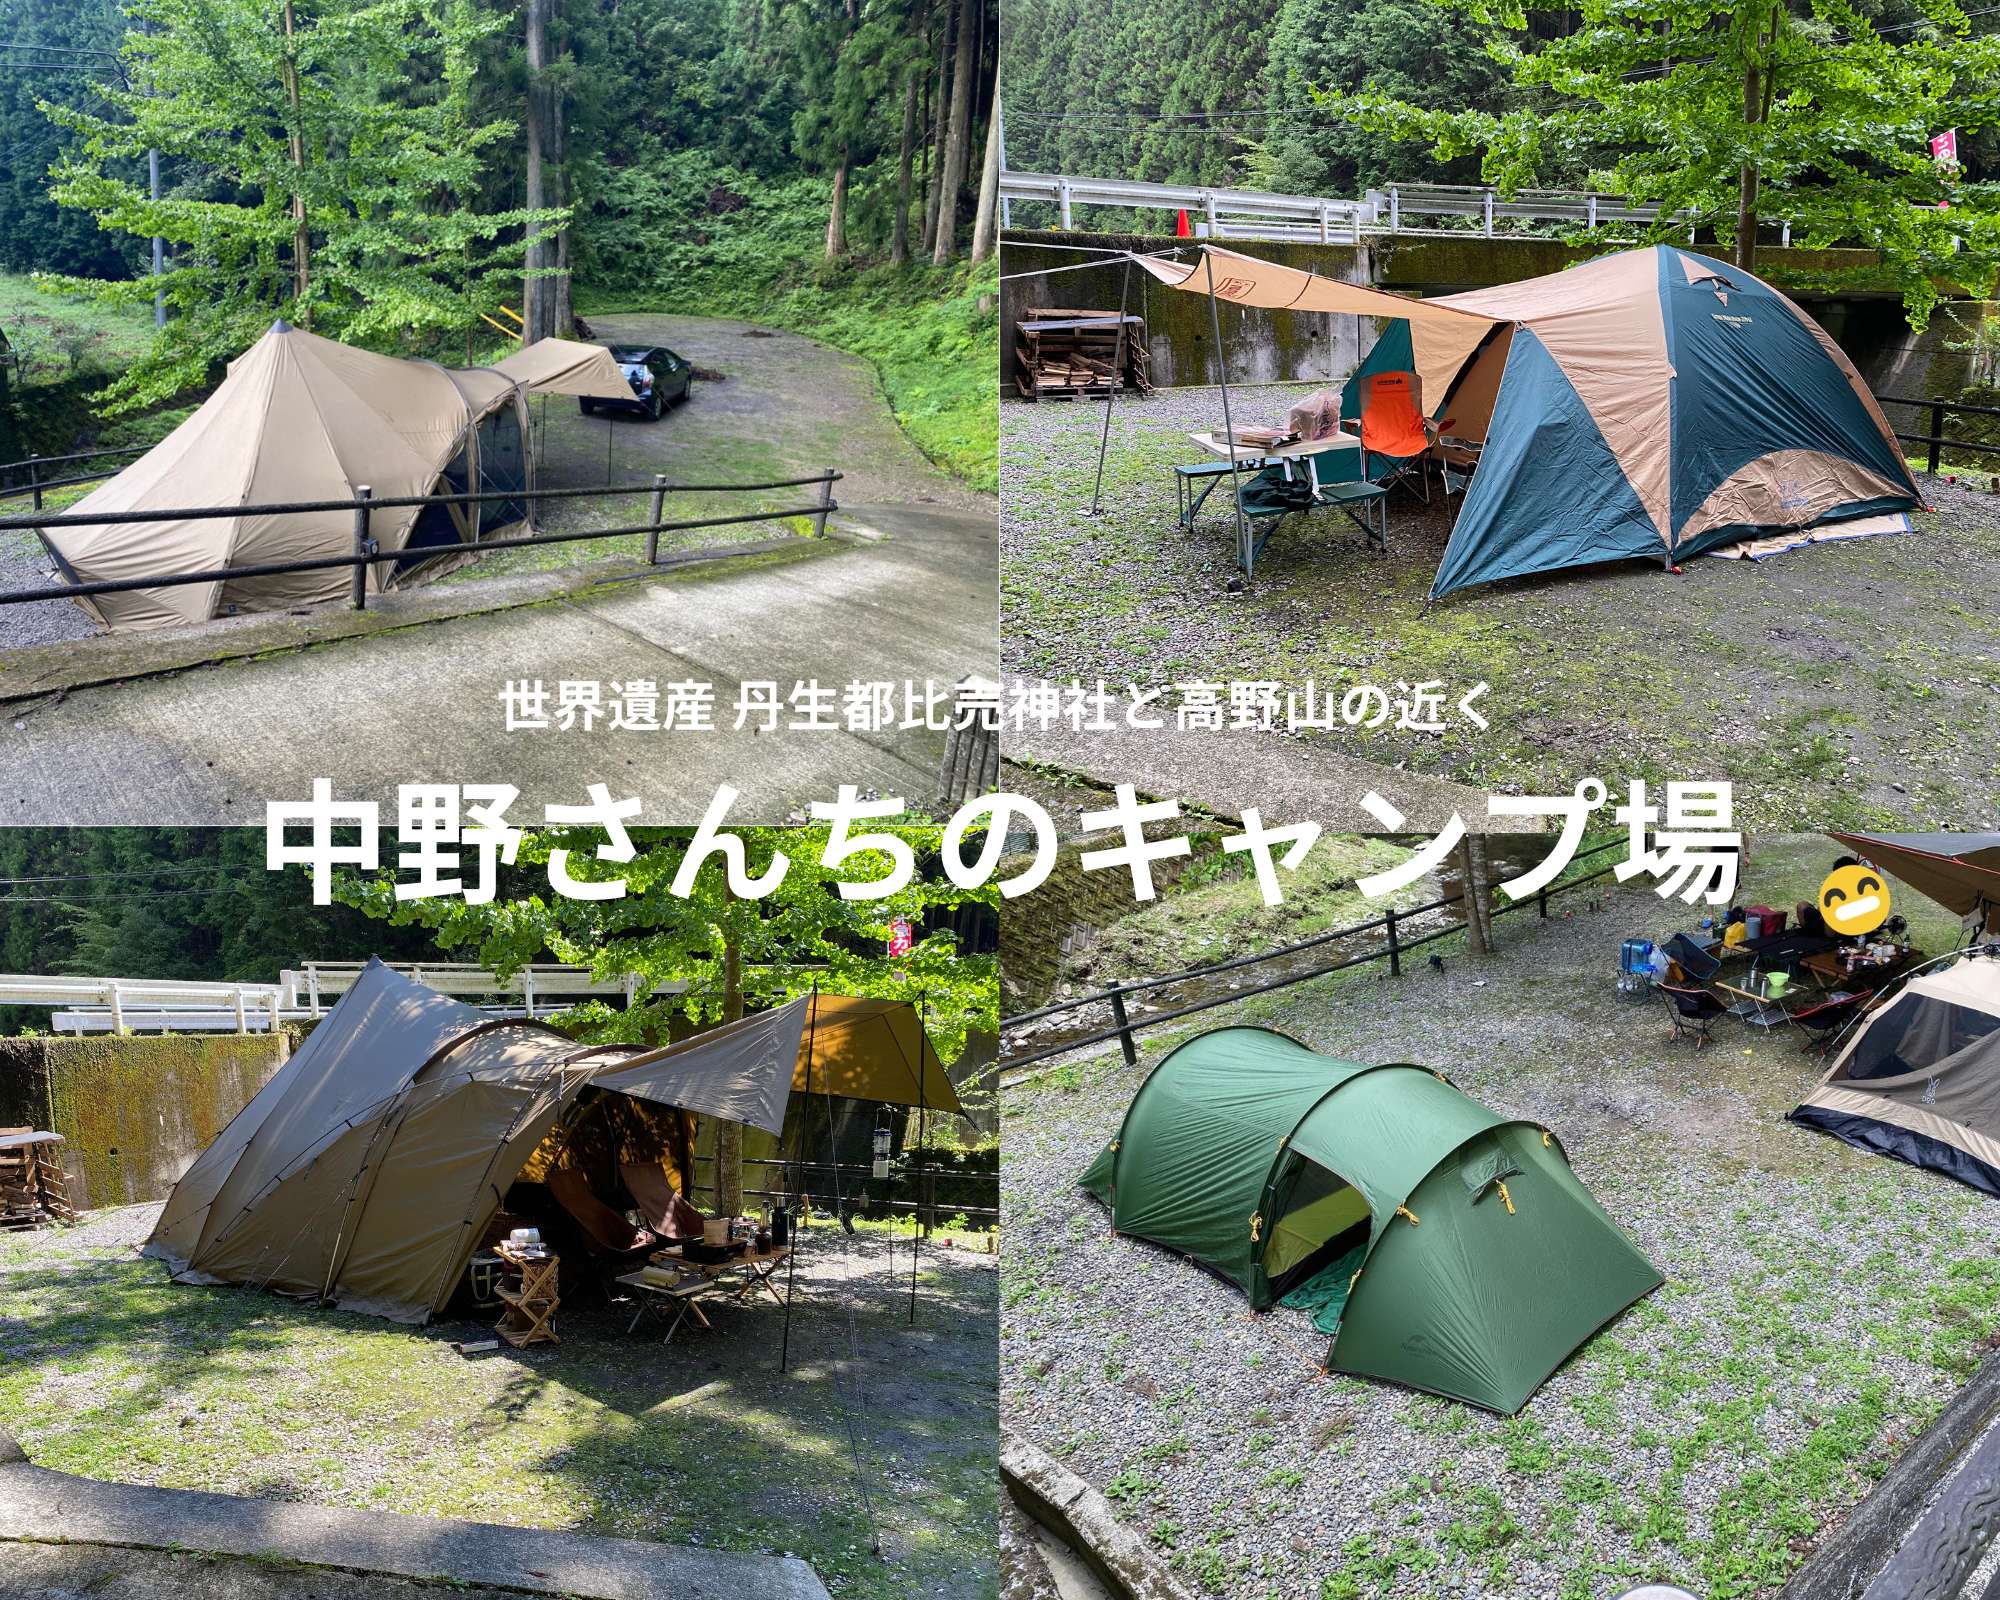 Excamp 写真で探すキャンプ場検索 予約サイト